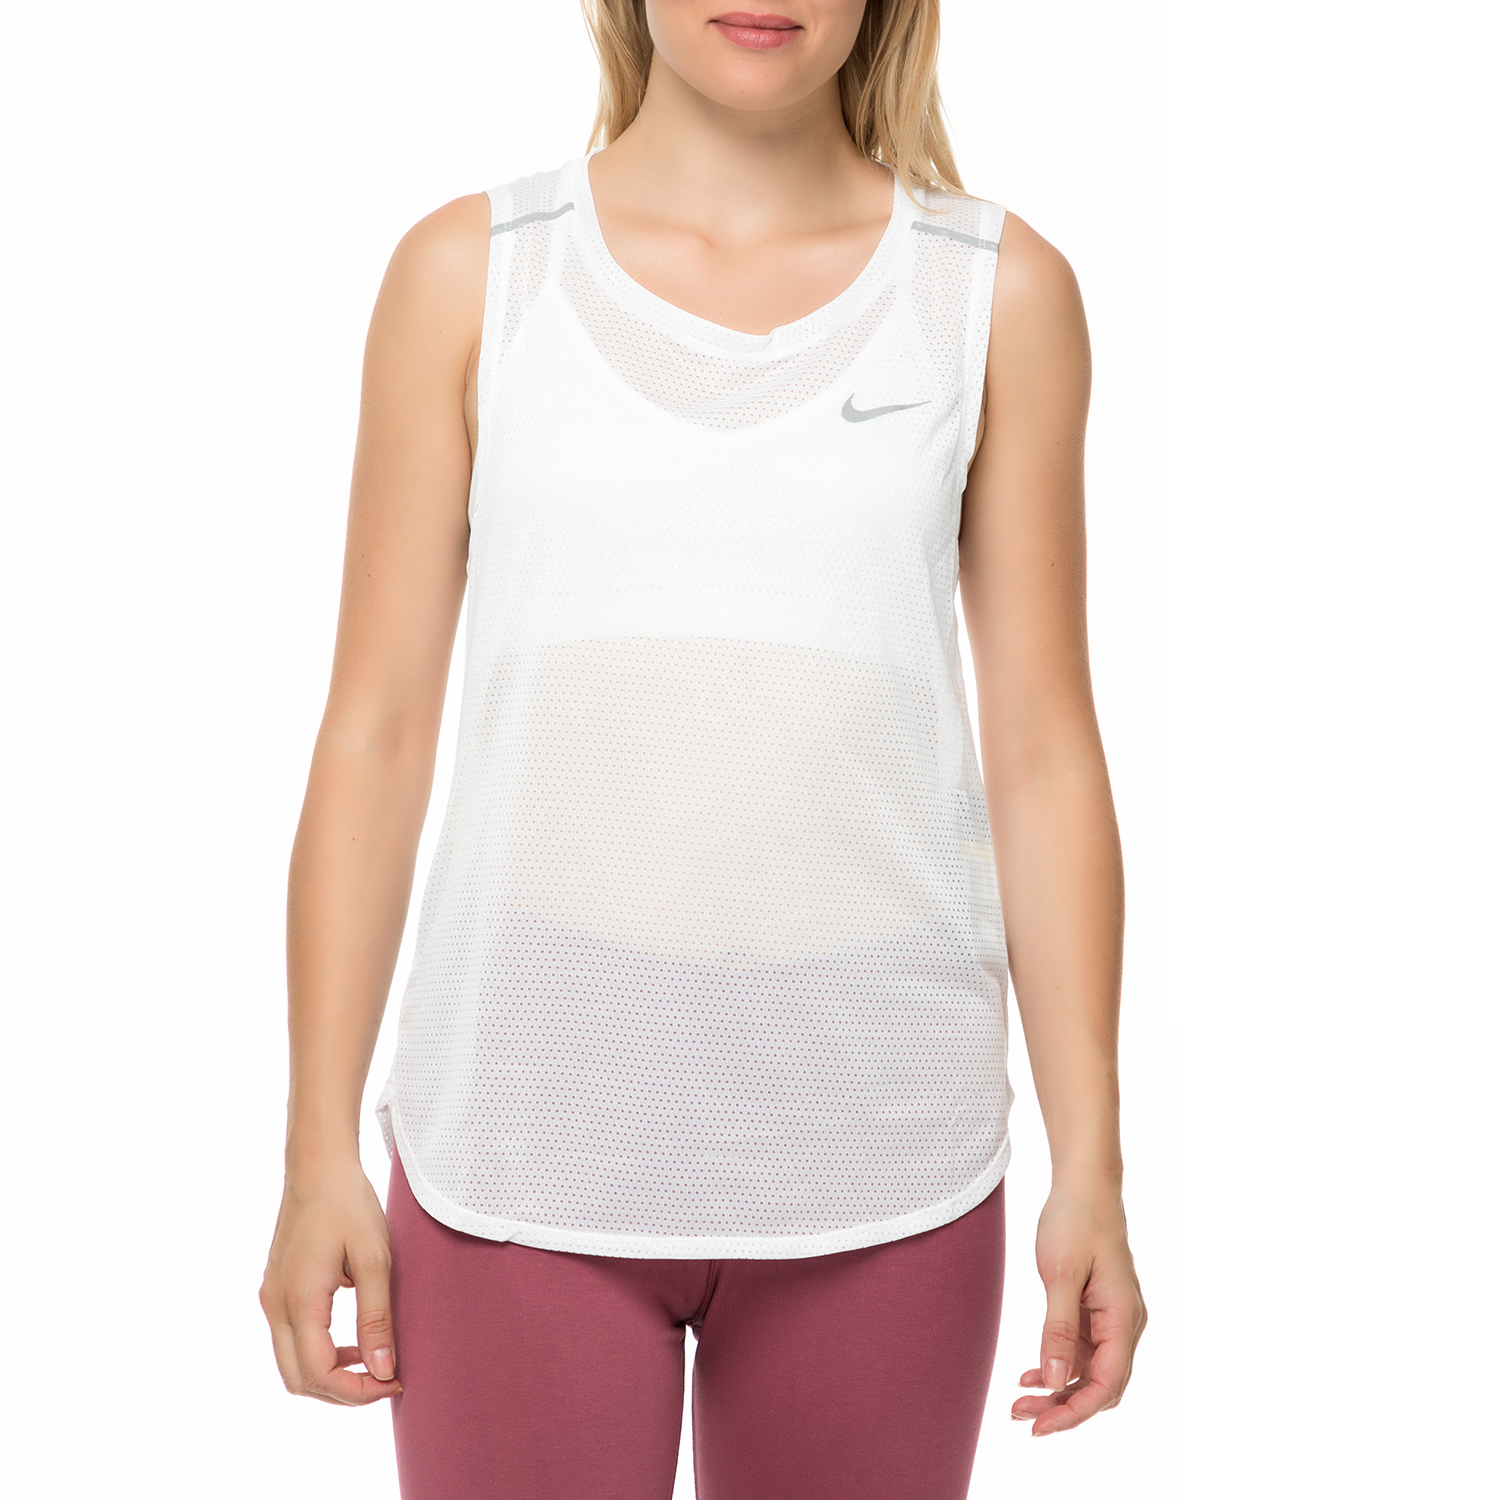 Γυναικεία/Ρούχα/Αθλητικά/T-shirt-Τοπ NIKE - Γυναικείο αθλητικό φανελάκι Nike Breathe λευκό